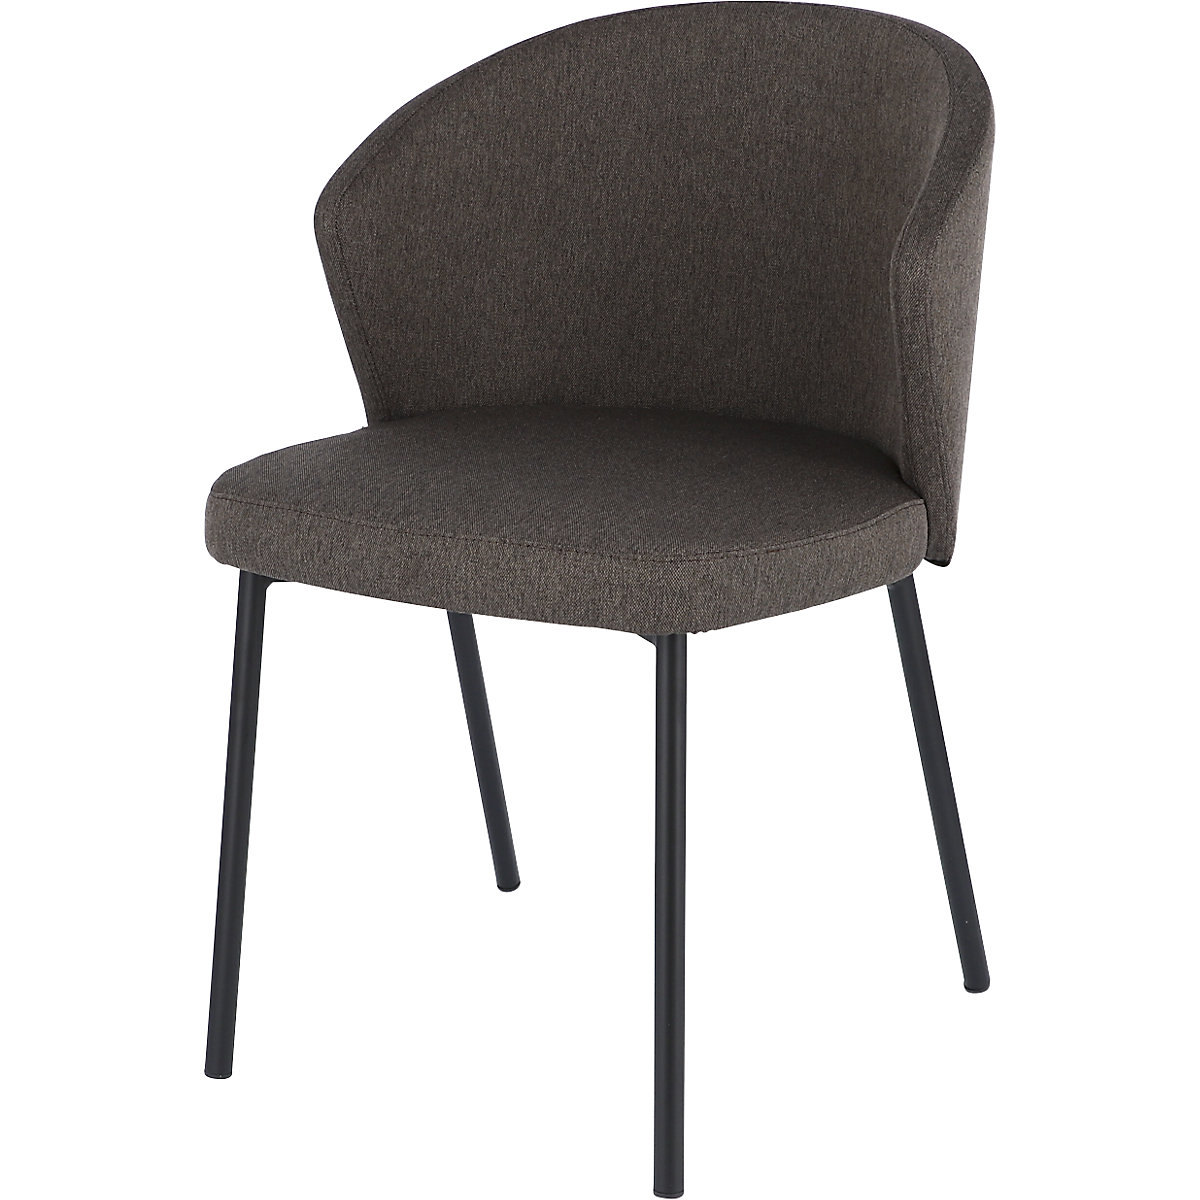 Víceúčelová židle MILA, trubkový ocelový rám, černá, hnědá-8